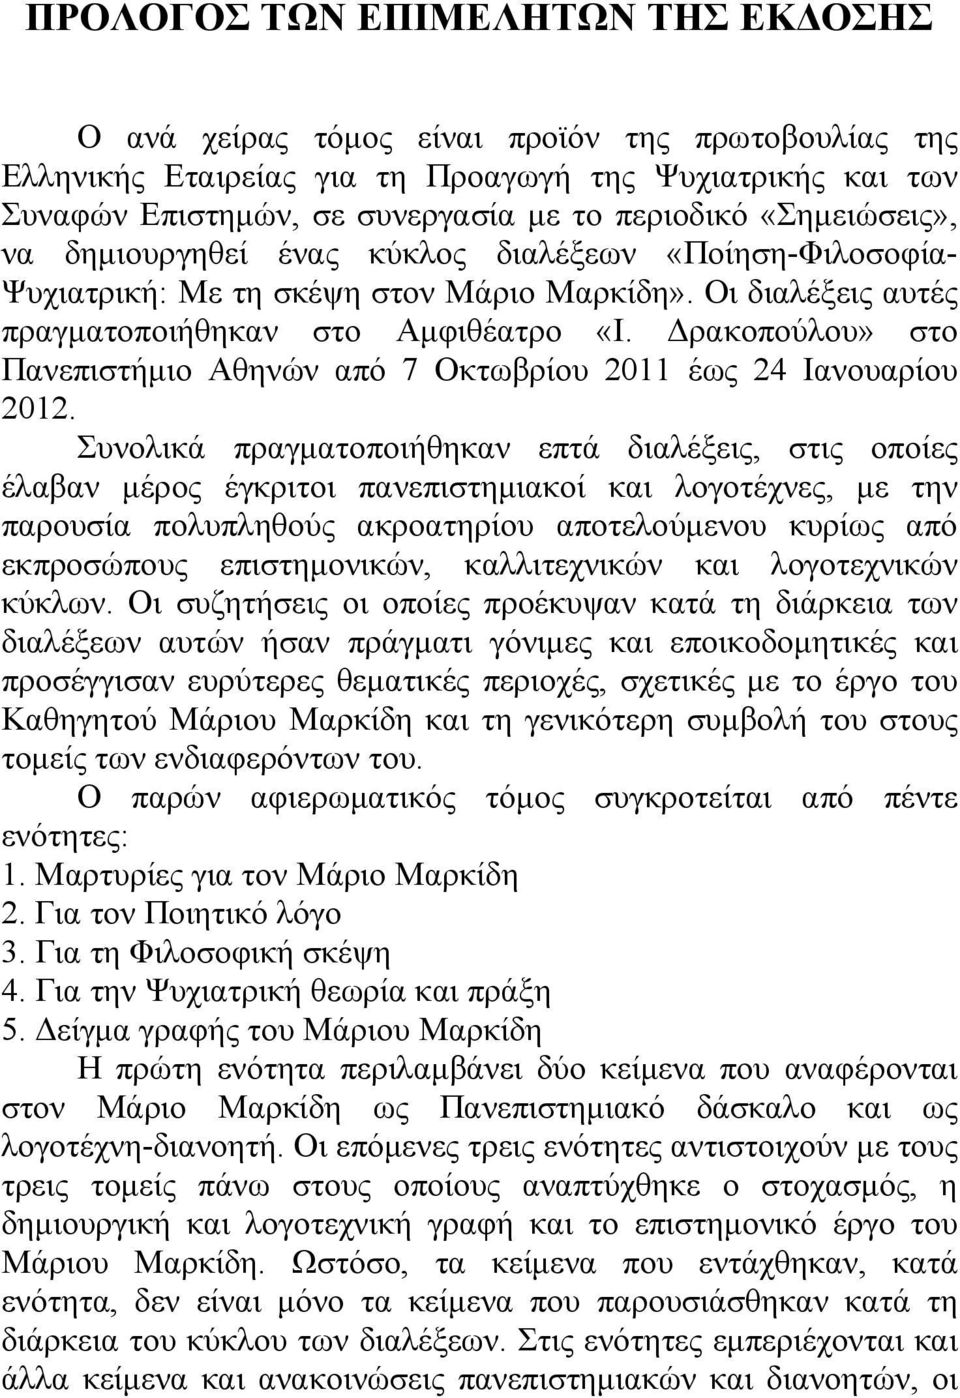 Δρακοπούλου» στο Πανεπιστήμιο Αθηνών από 7 Οκτωβρίου 2011 έως 24 Ιανουαρίου 2012.